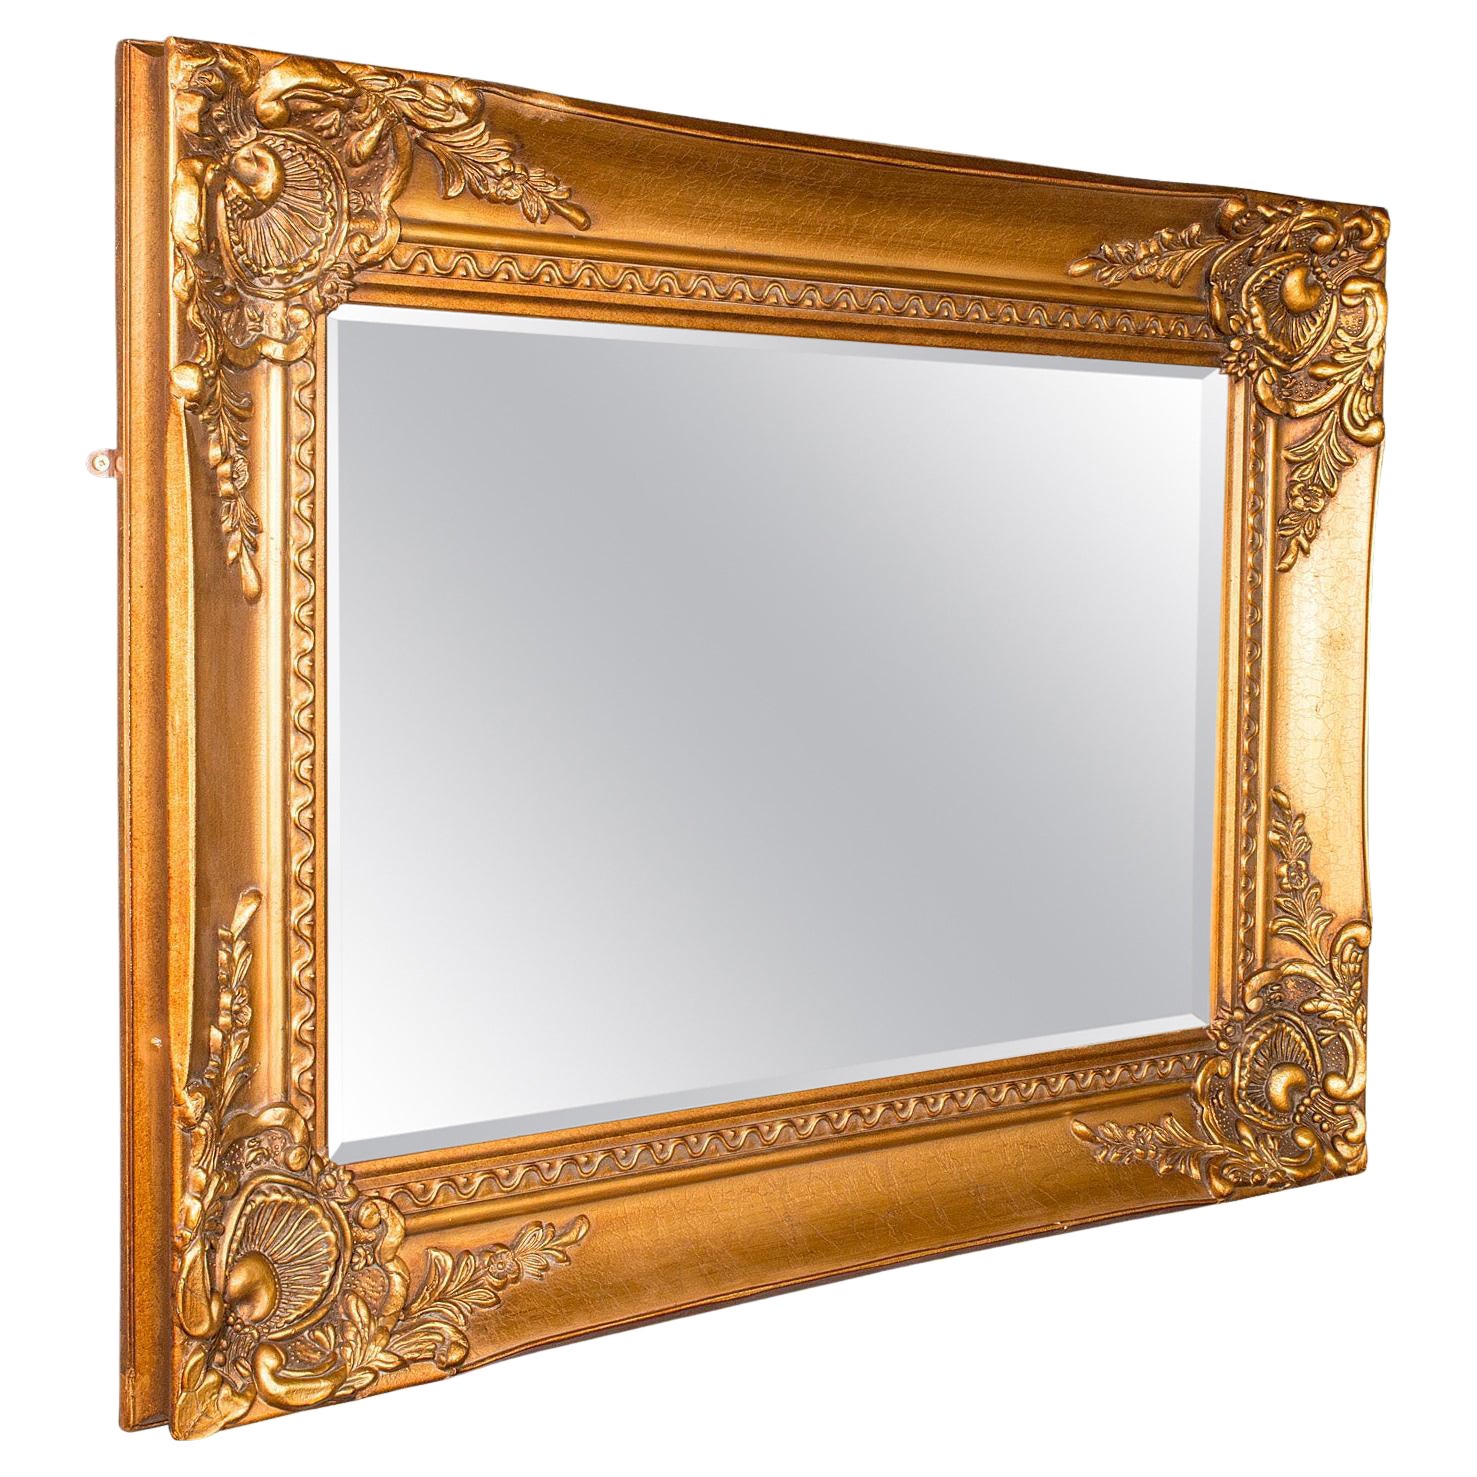 Großer dekorativer Vintage-Spiegel, kontinental, vergoldetes Holz, Wand, italienisch